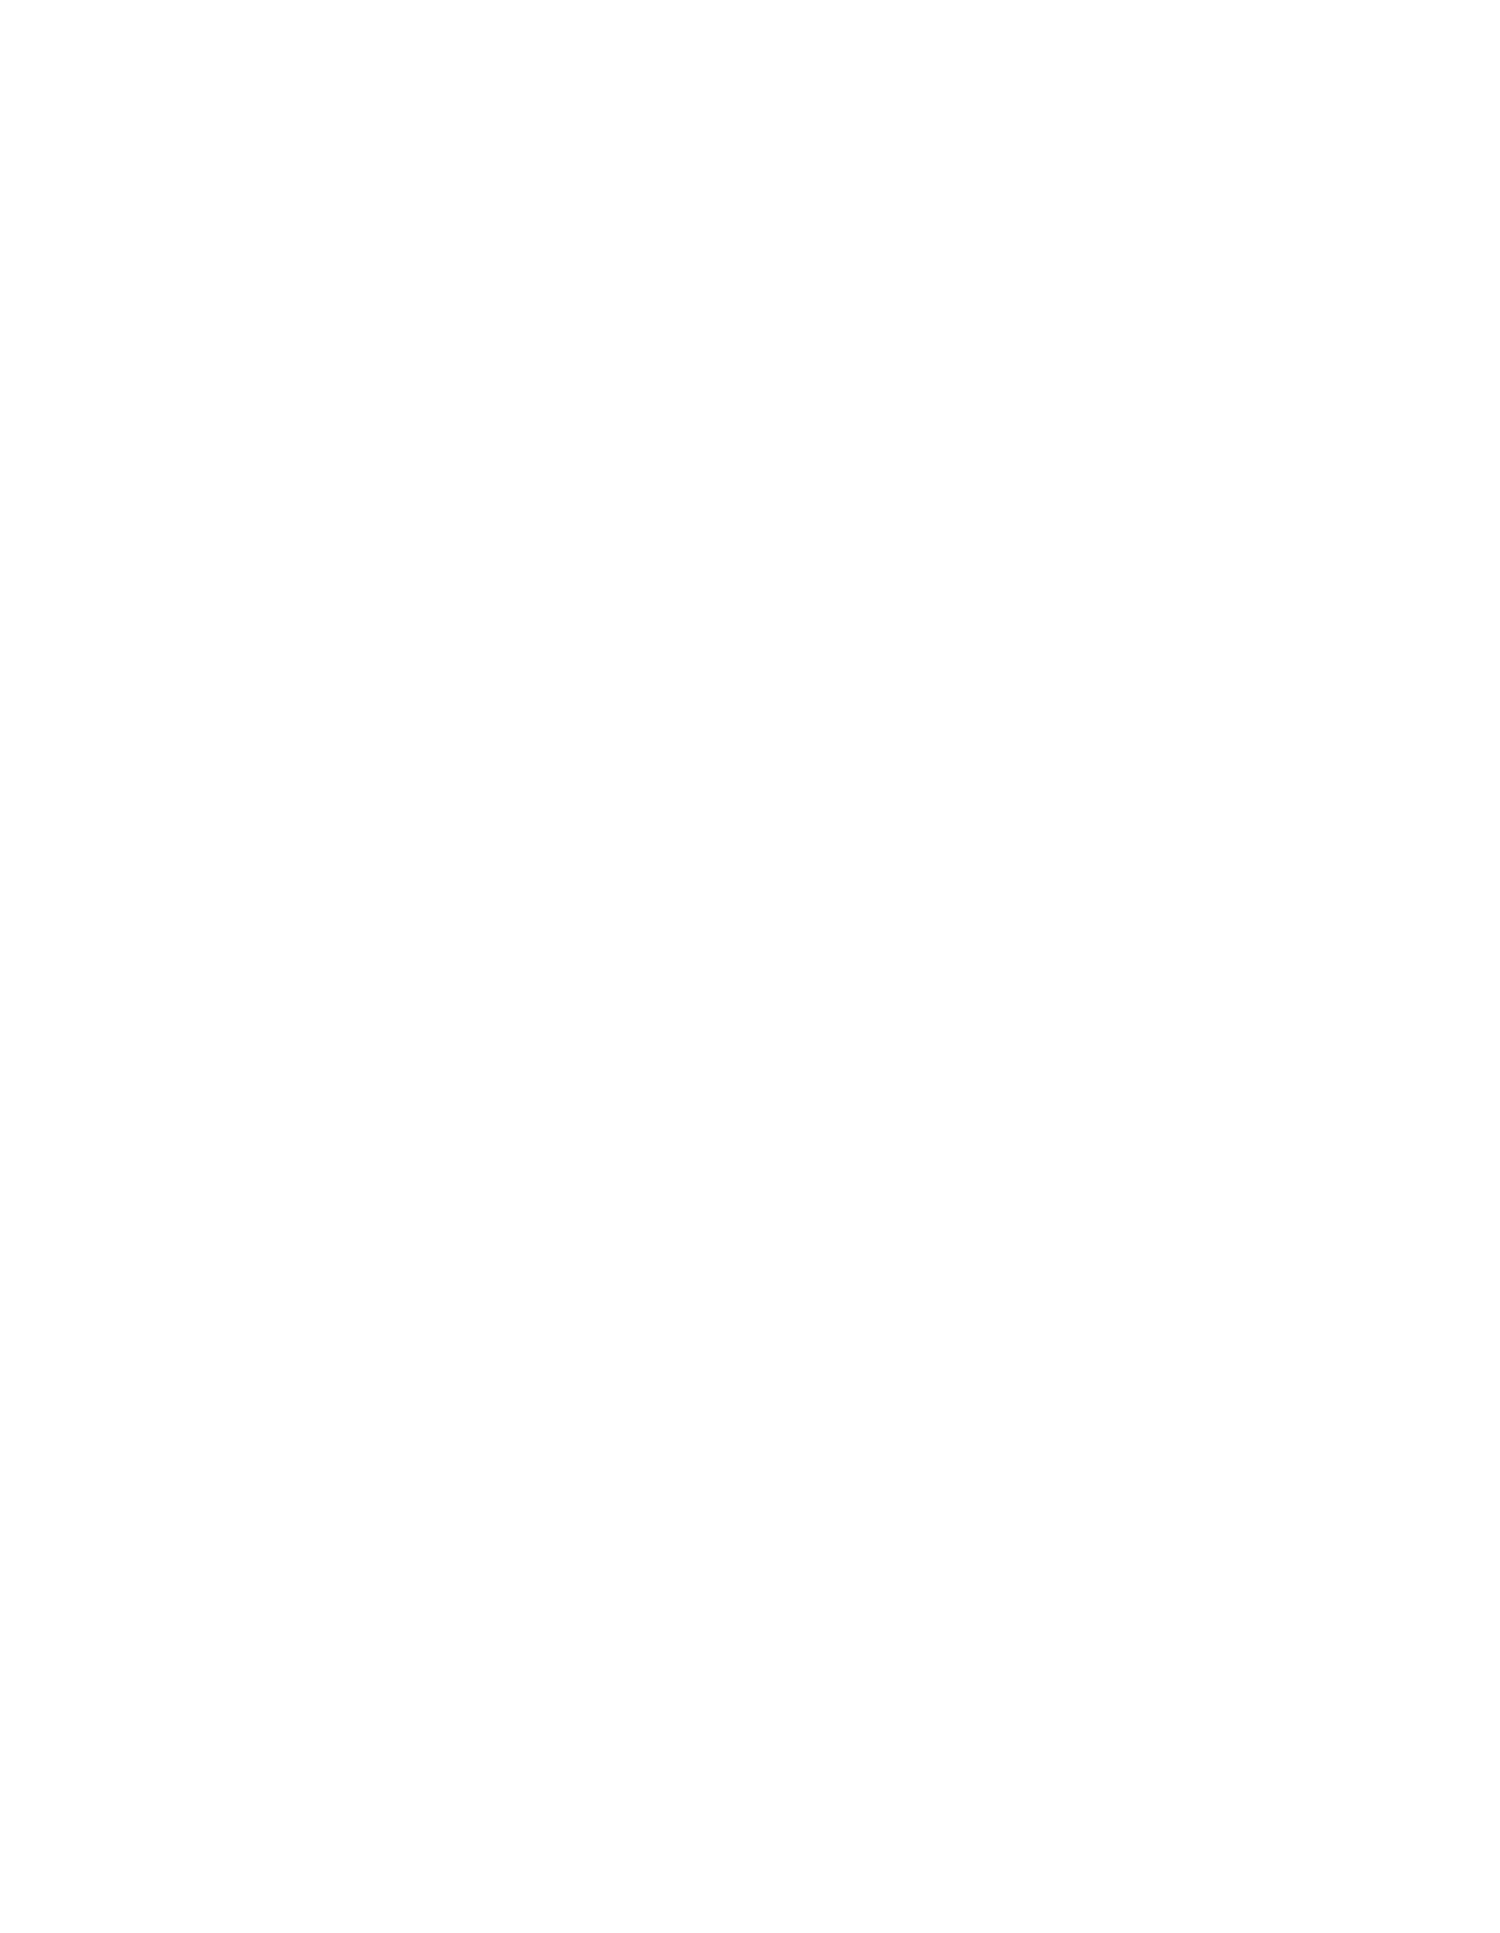 Harvest Theatre Company